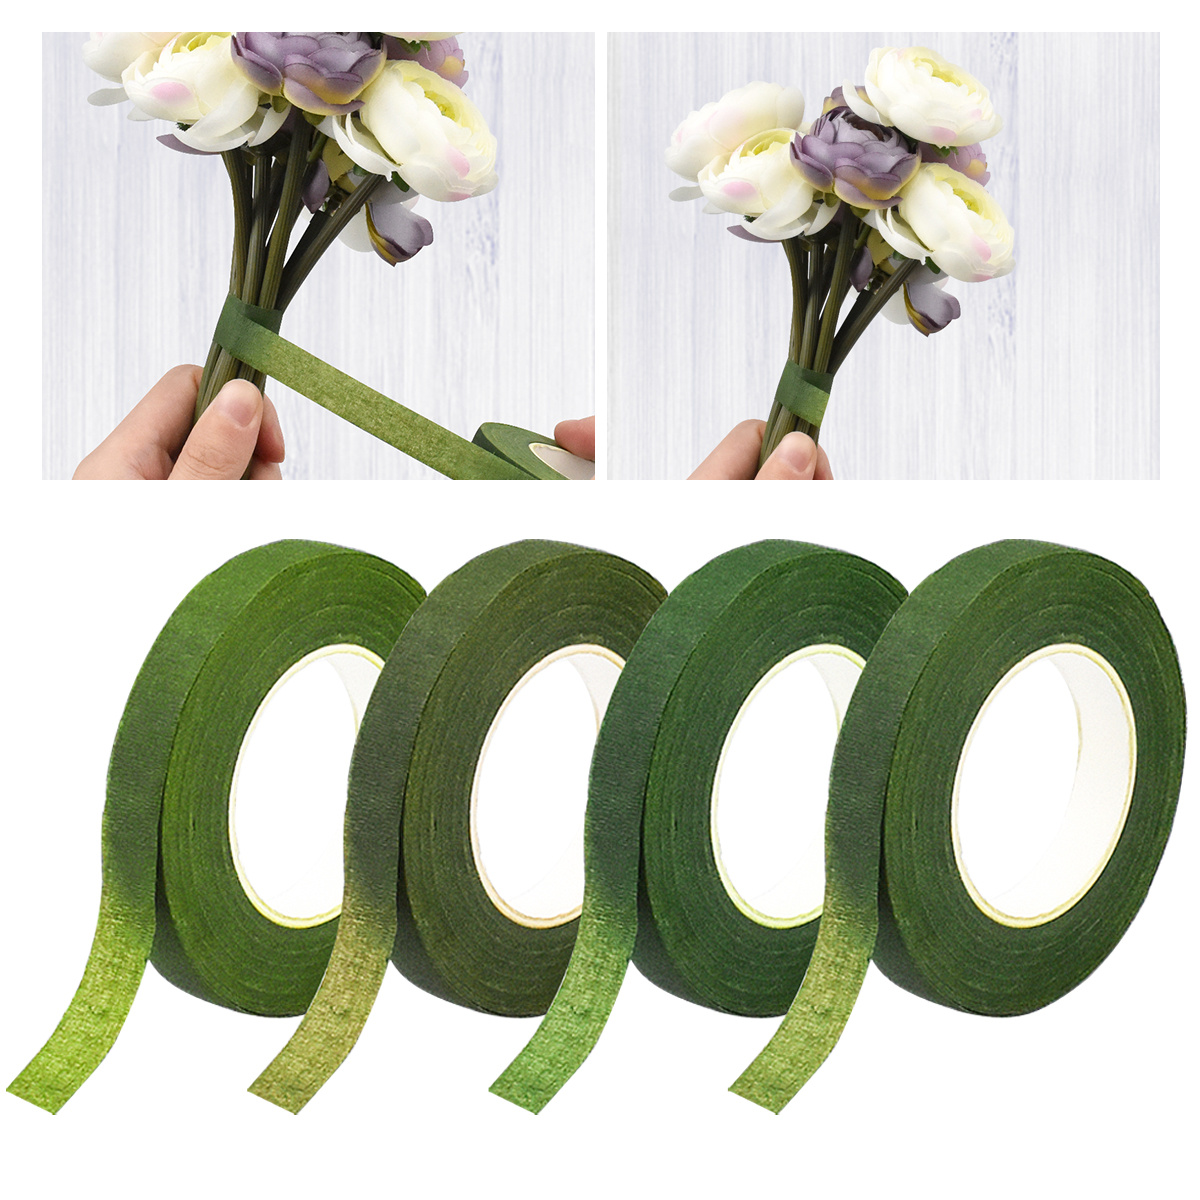 Floral Arrangement Kit Flower Arrangements Supplies Bouquet Stem Wrap  Trimming Scissors Double-Sided Tape Wire Corsage